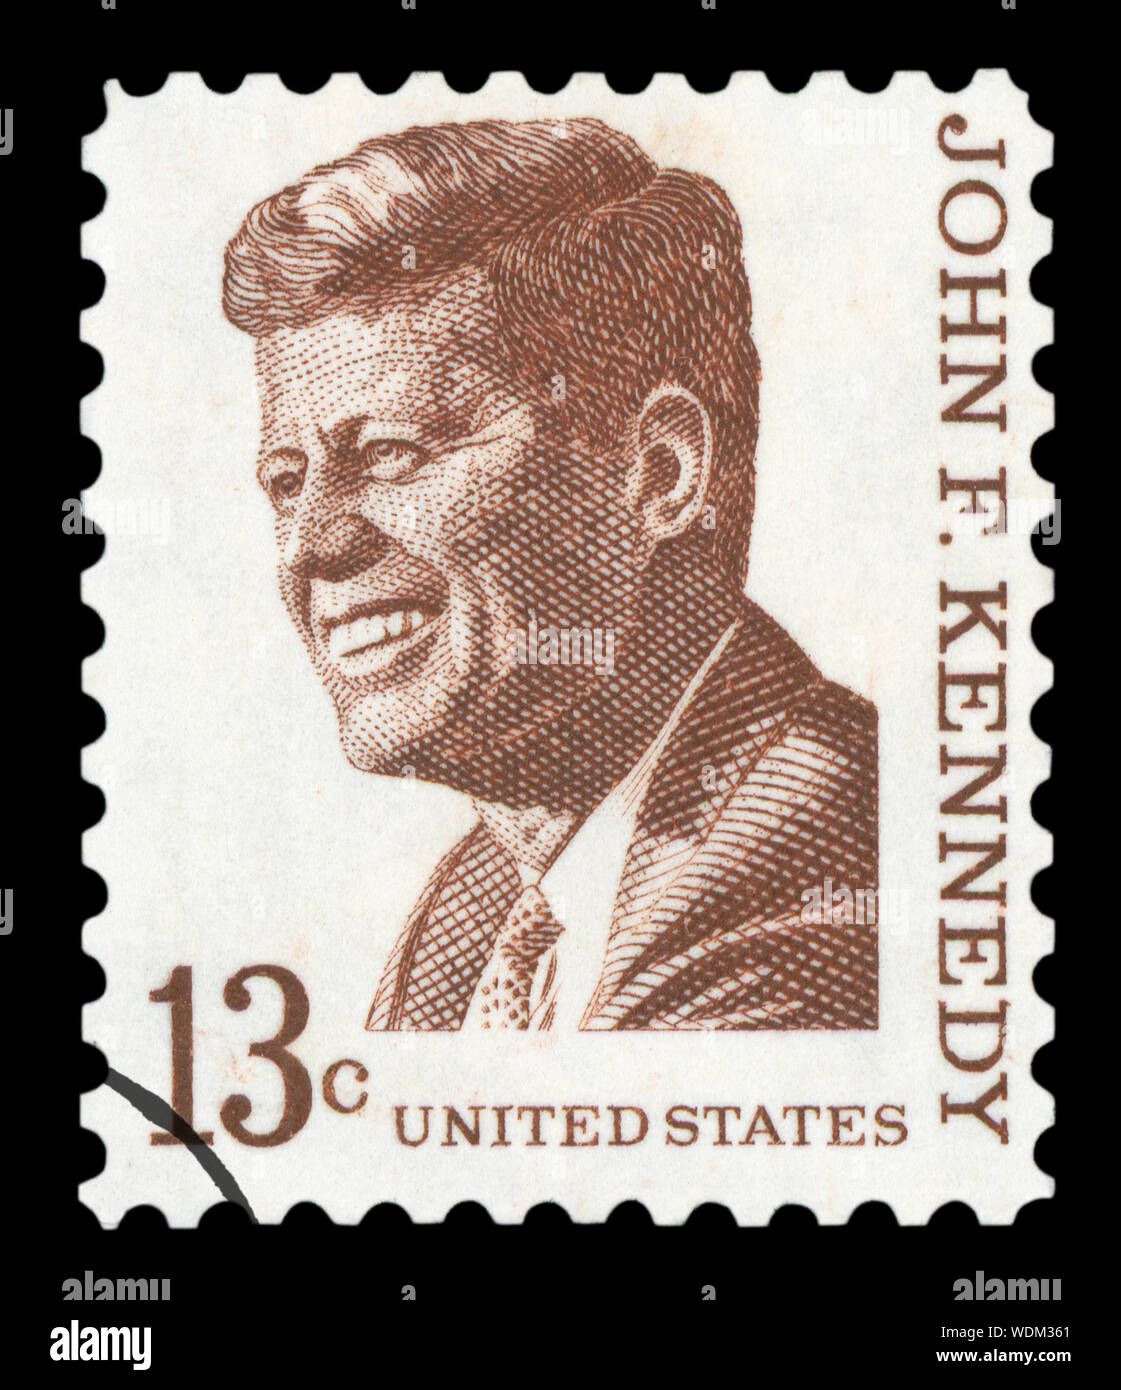 États-unis D'AMÉRIQUE - circa 1967 : un timbre-poste imprimé aux États-Unis montre un portrait du président John Fitzgerald Kennedy Banque D'Images